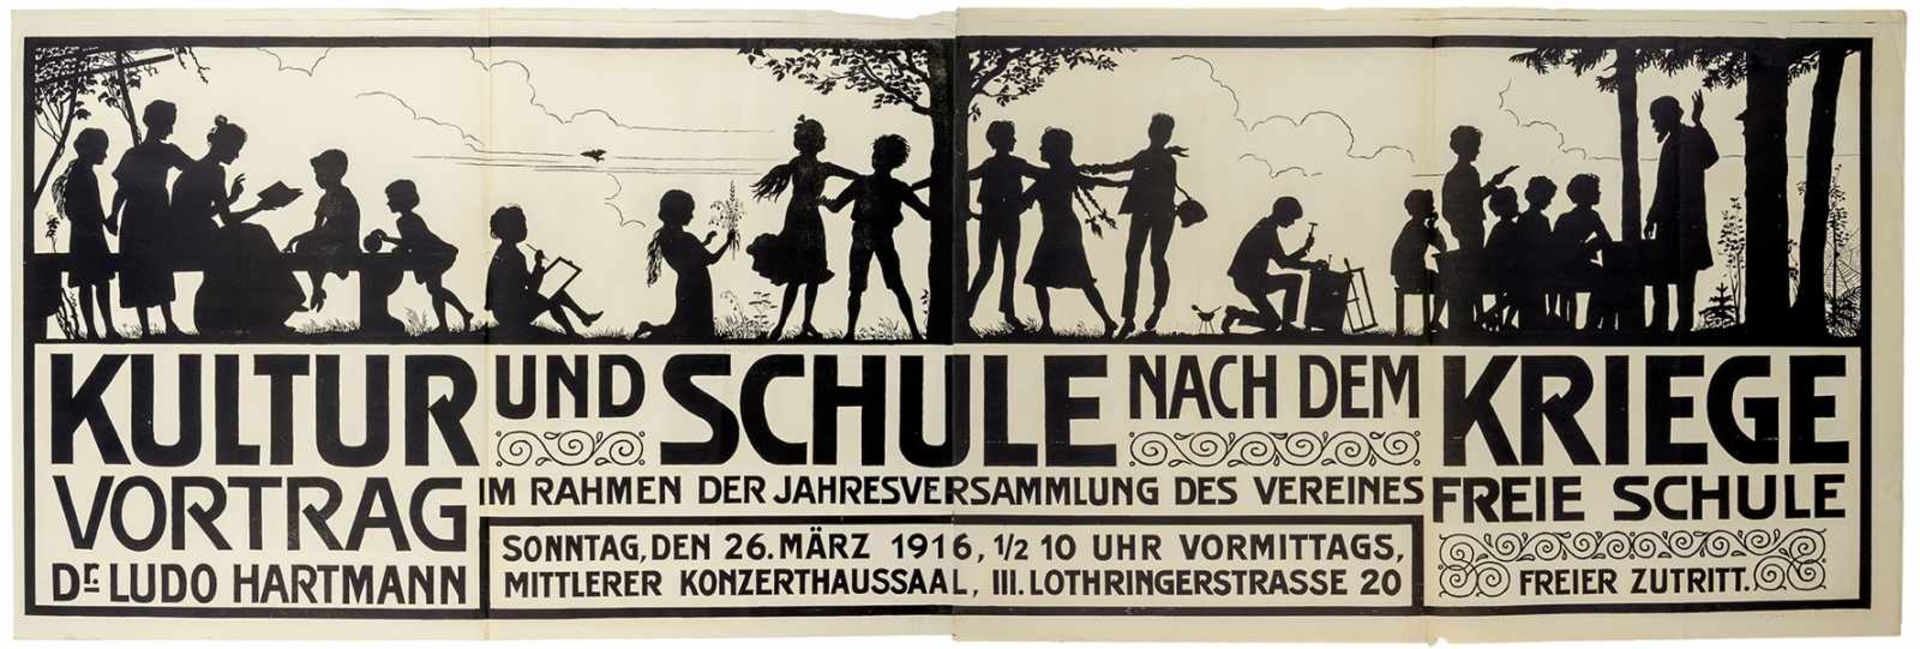 Plakate - - Kultur und Schule nach dem Kriege. Vortrag Dr. Ludo Hartmann im Rahmen der